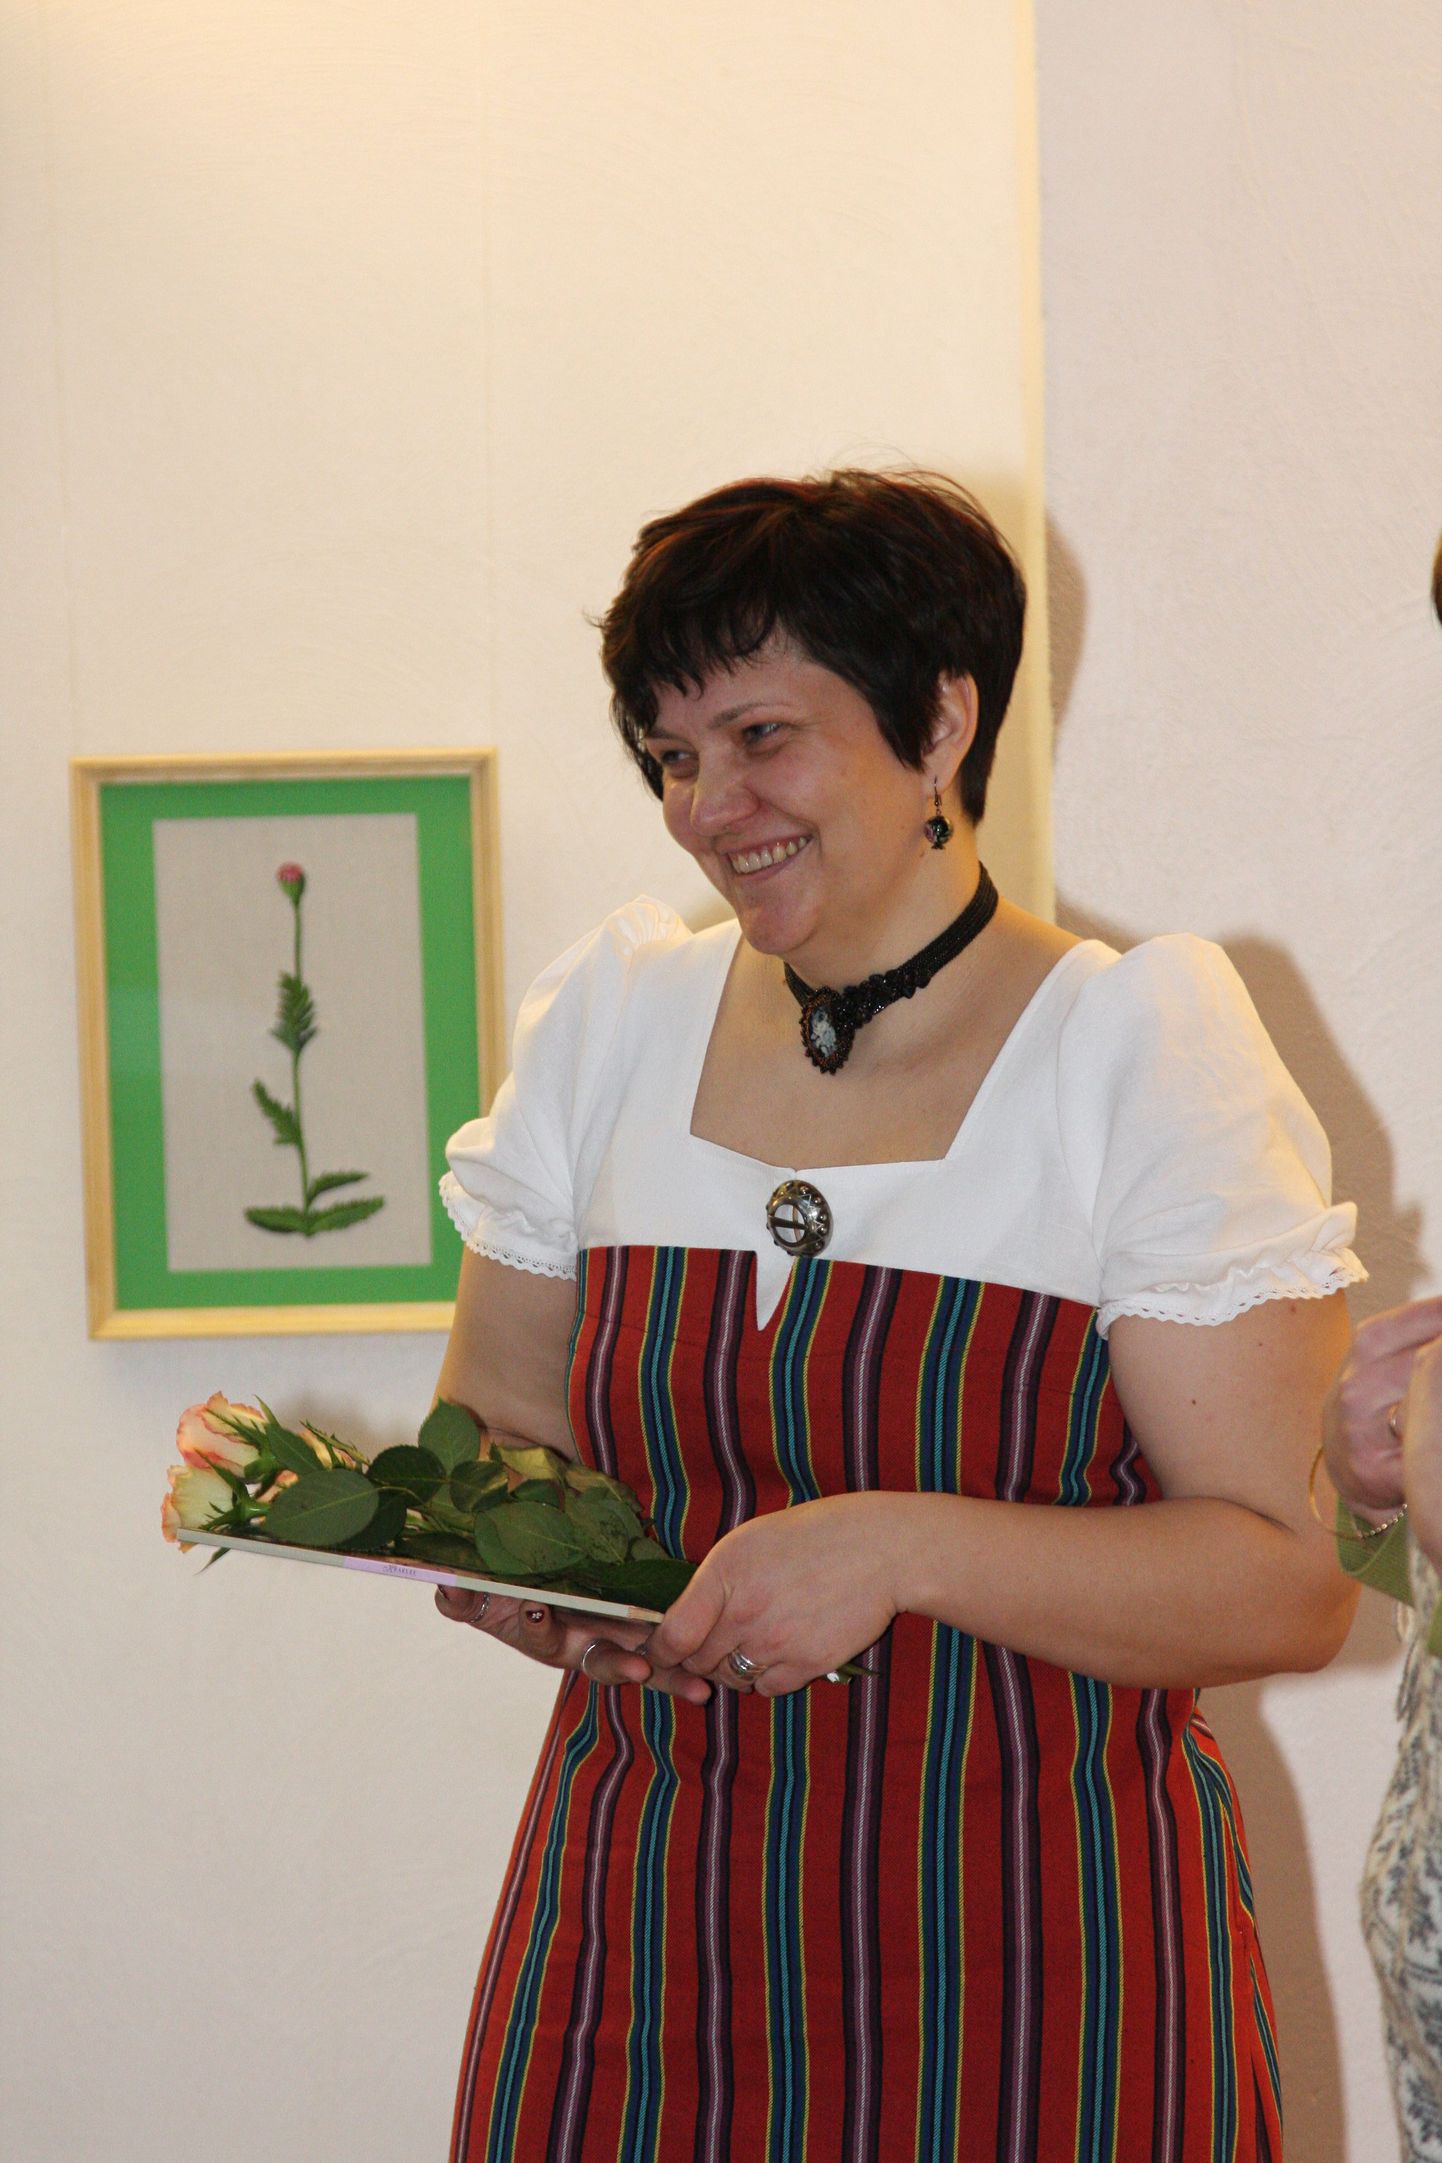 Aire Hulkko isikunäituse avamisel Valga kultuuri- ja huvialakeskuses 2010. aastal.